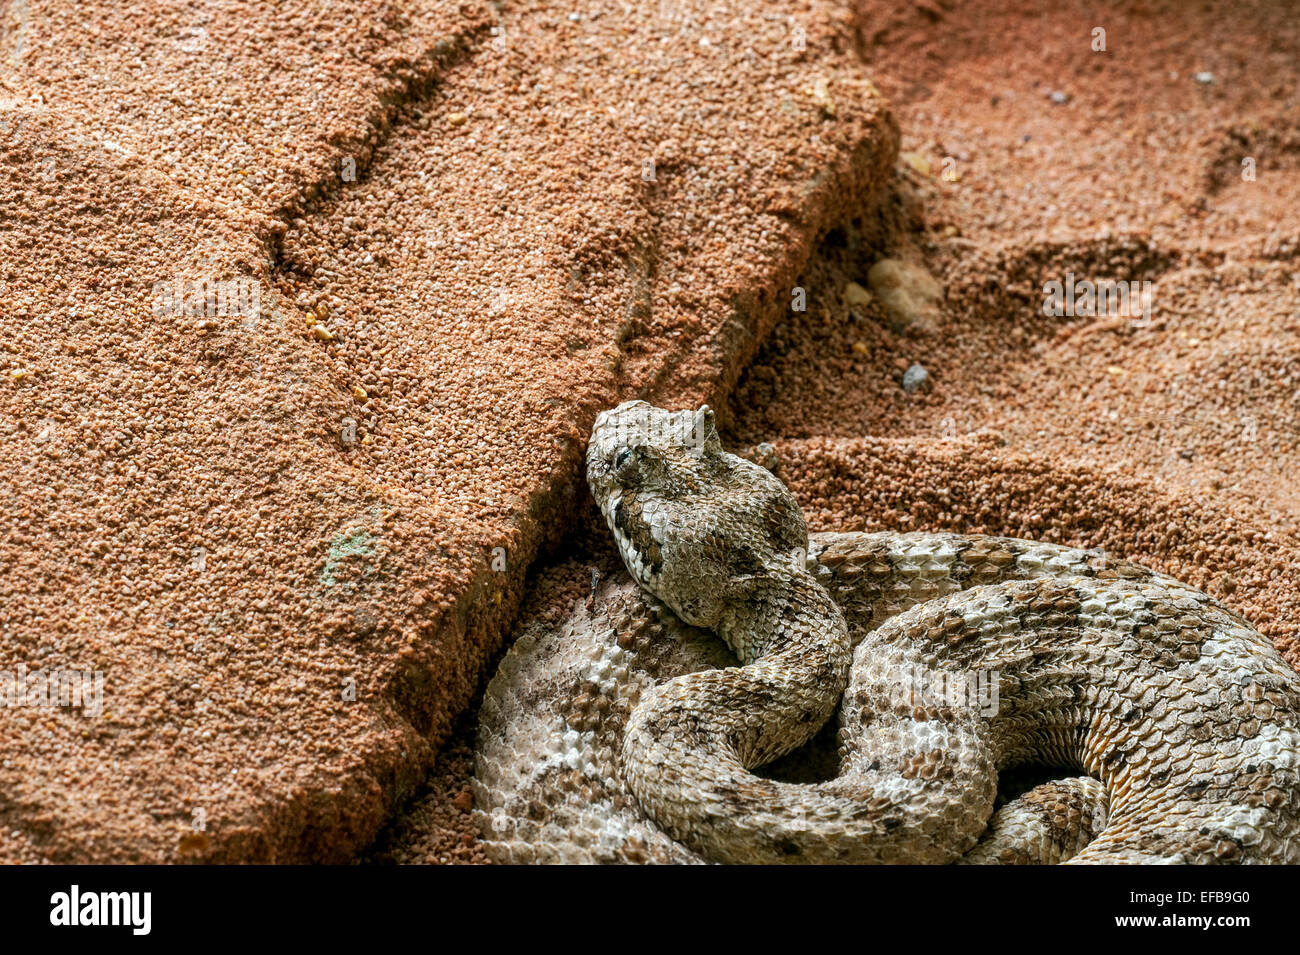 Sidewinder / cuernos / sidewinder de serpientes de cascabel serpiente de cascabel (Crotalus cerastes) al acecho, el suroeste de los Estados Unidos y México Foto de stock